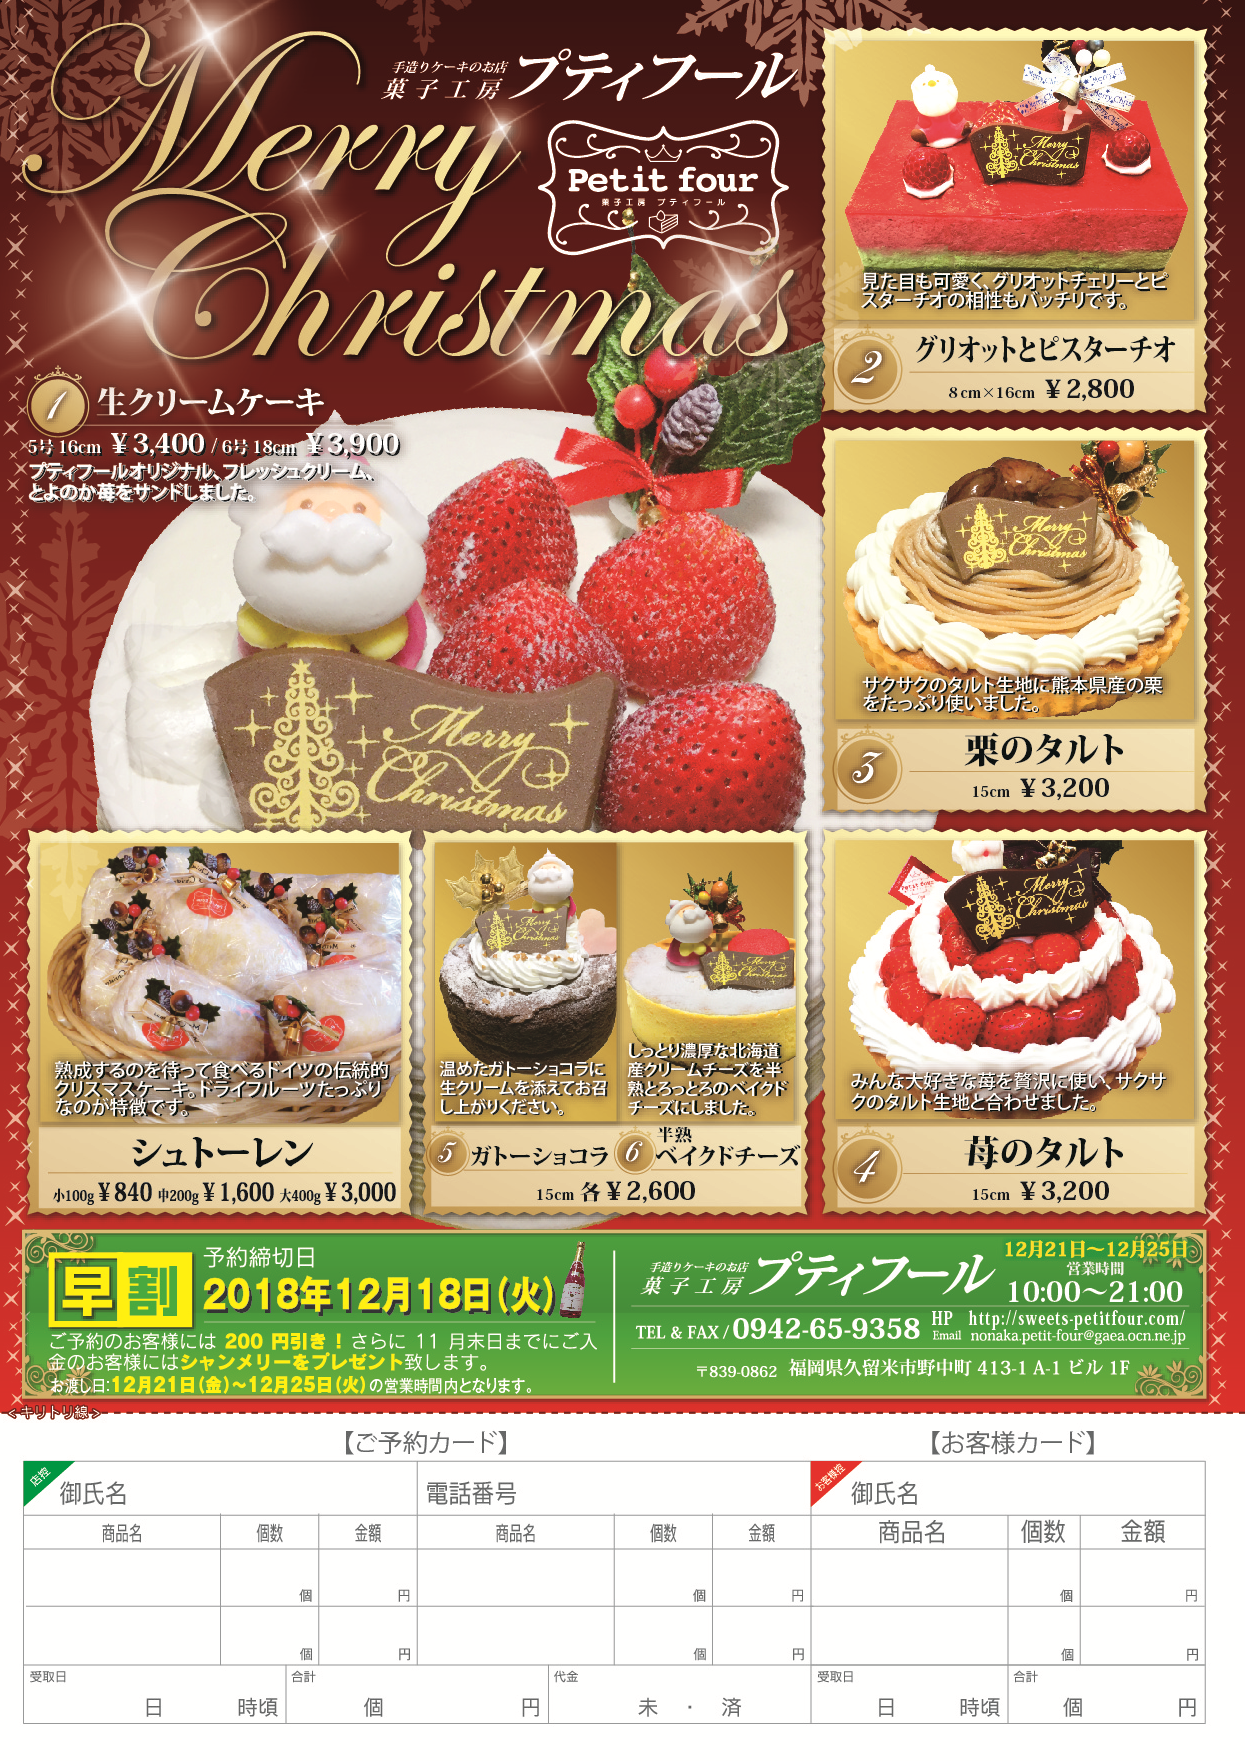 18クリスマスケーキ予約受付中 菓子工房プティフール公式サイト 福岡県久留米市